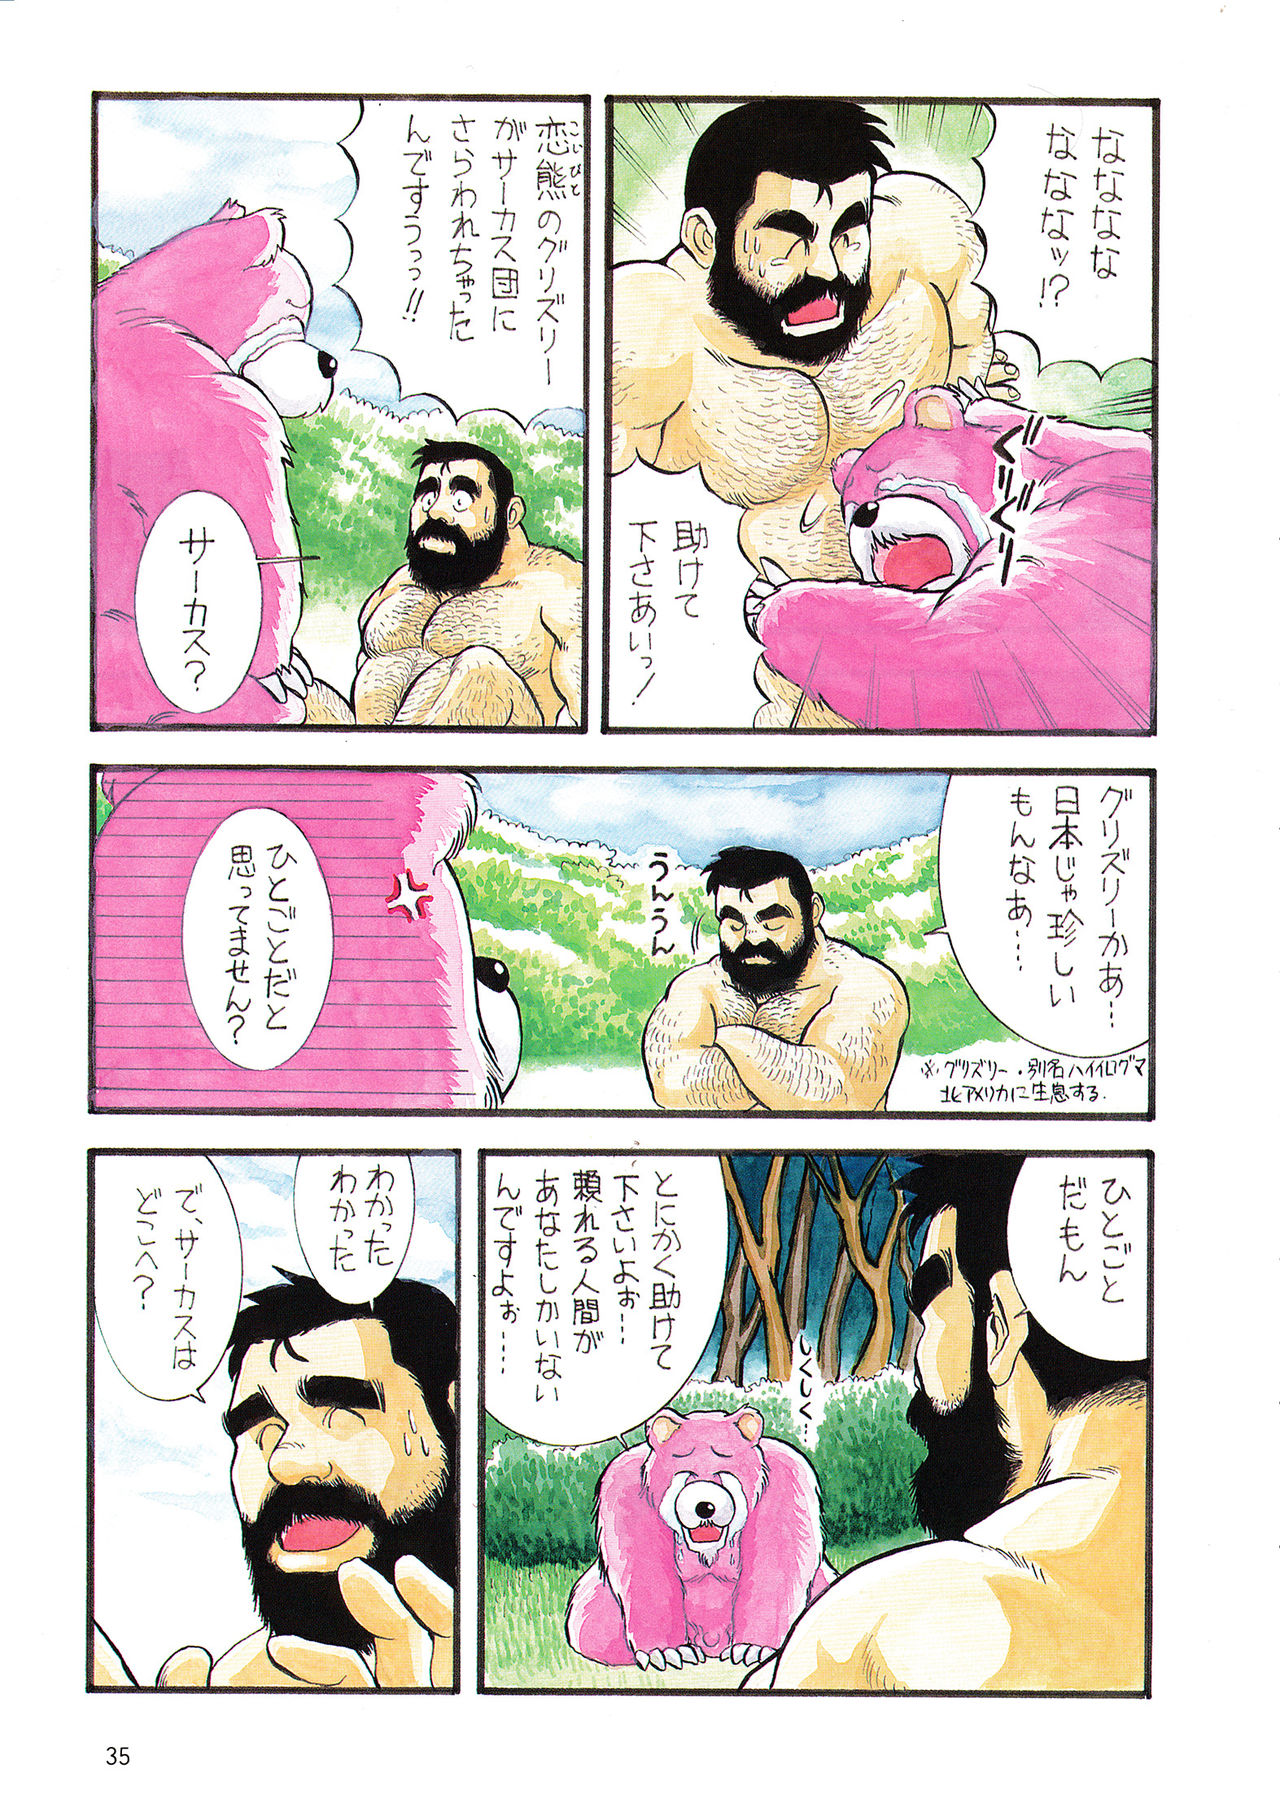 [藤本郷] ADVENTURE OF PINK BEAR (Gメン No.4 1995年11月25日)